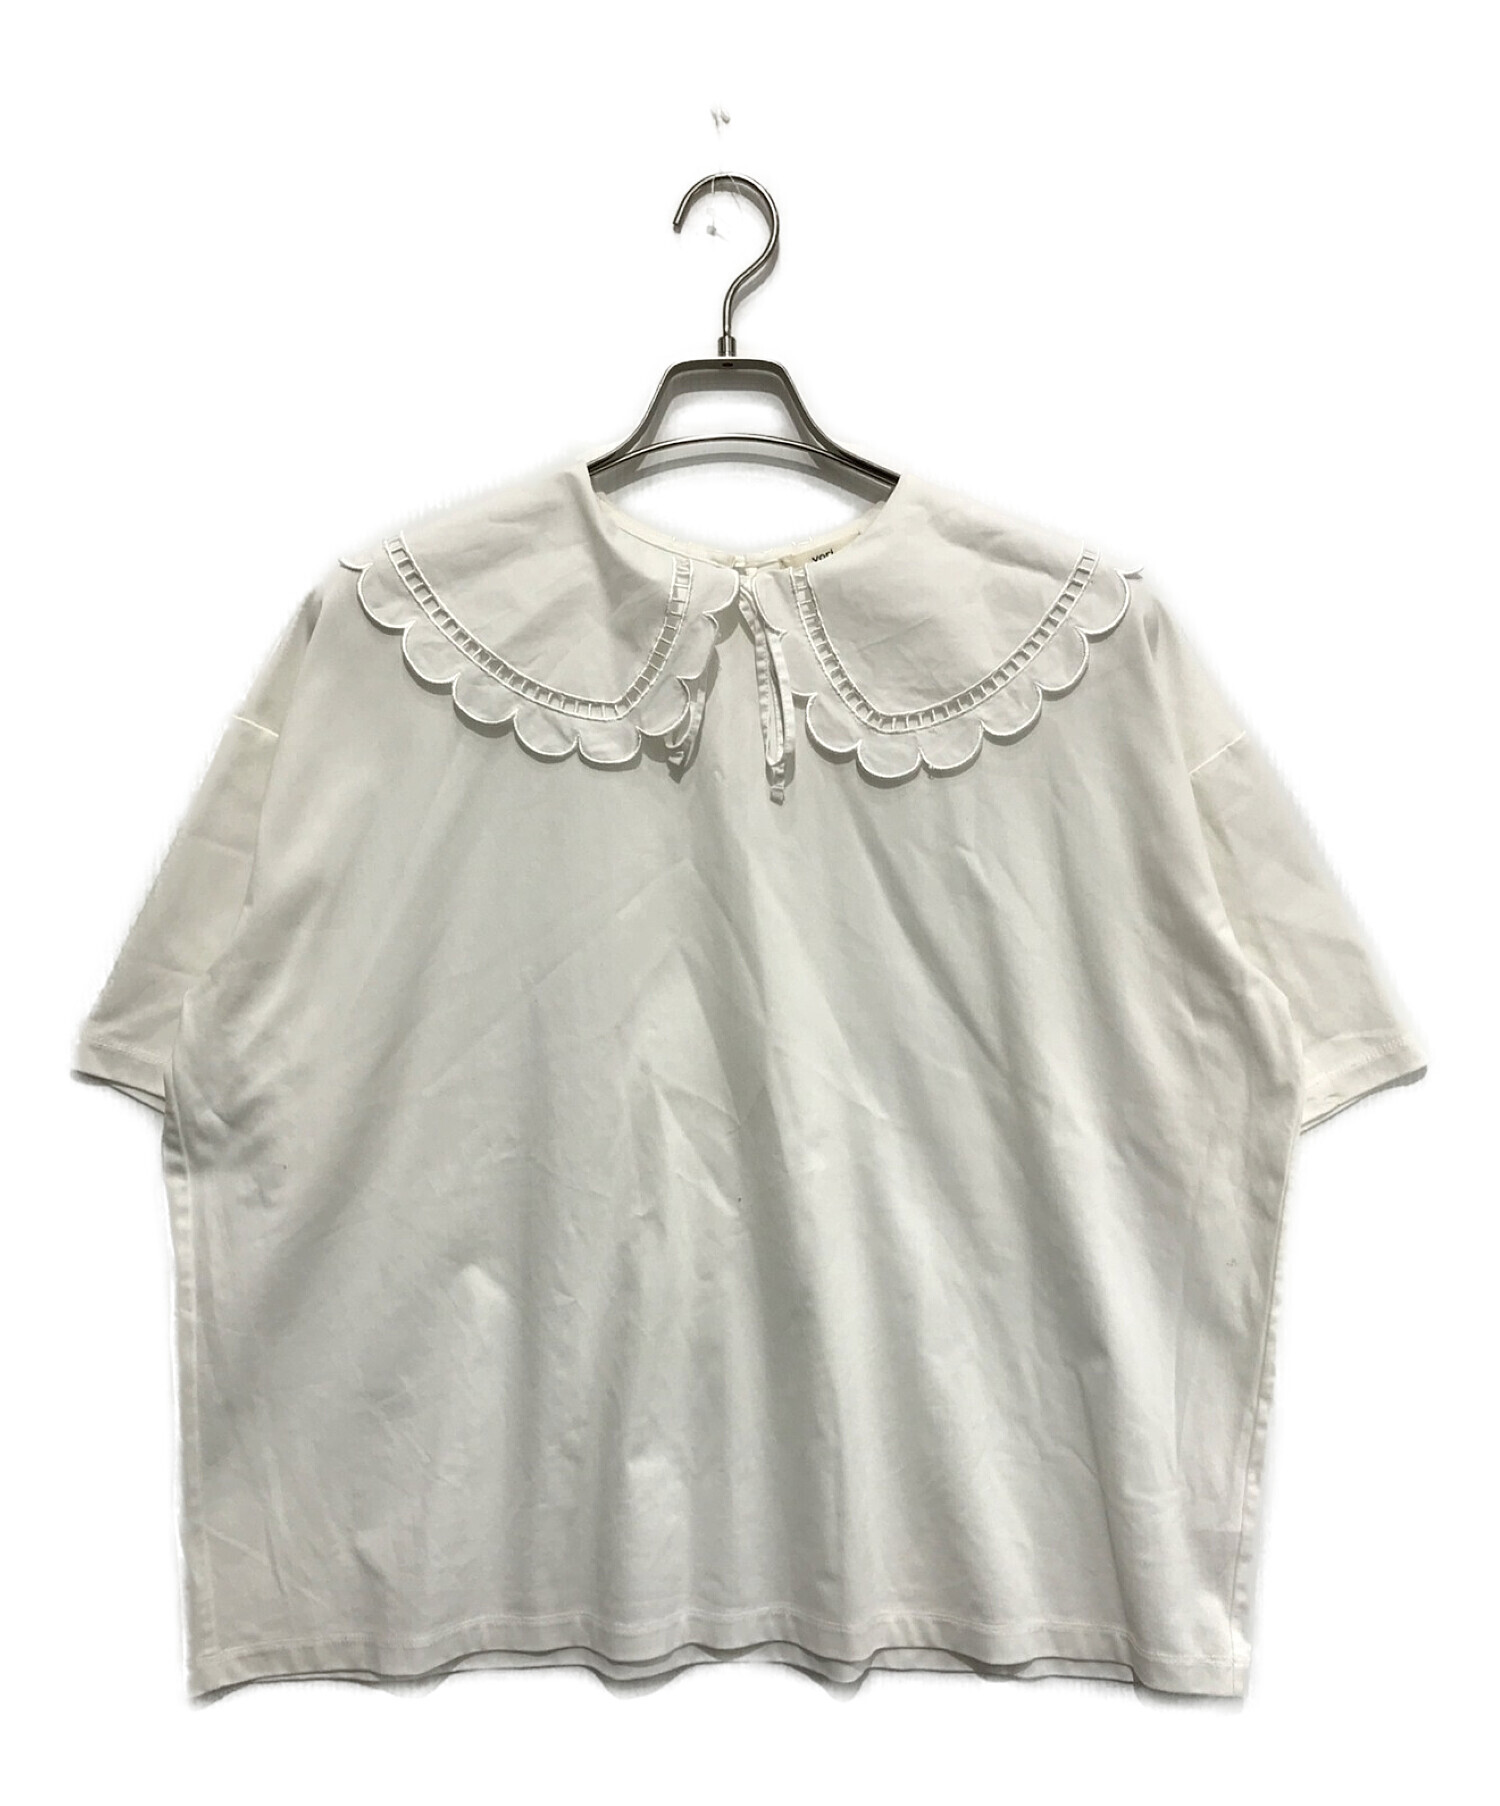 10800円公式 激安販売 購入安い yori スカラップカットソー Tシャツ